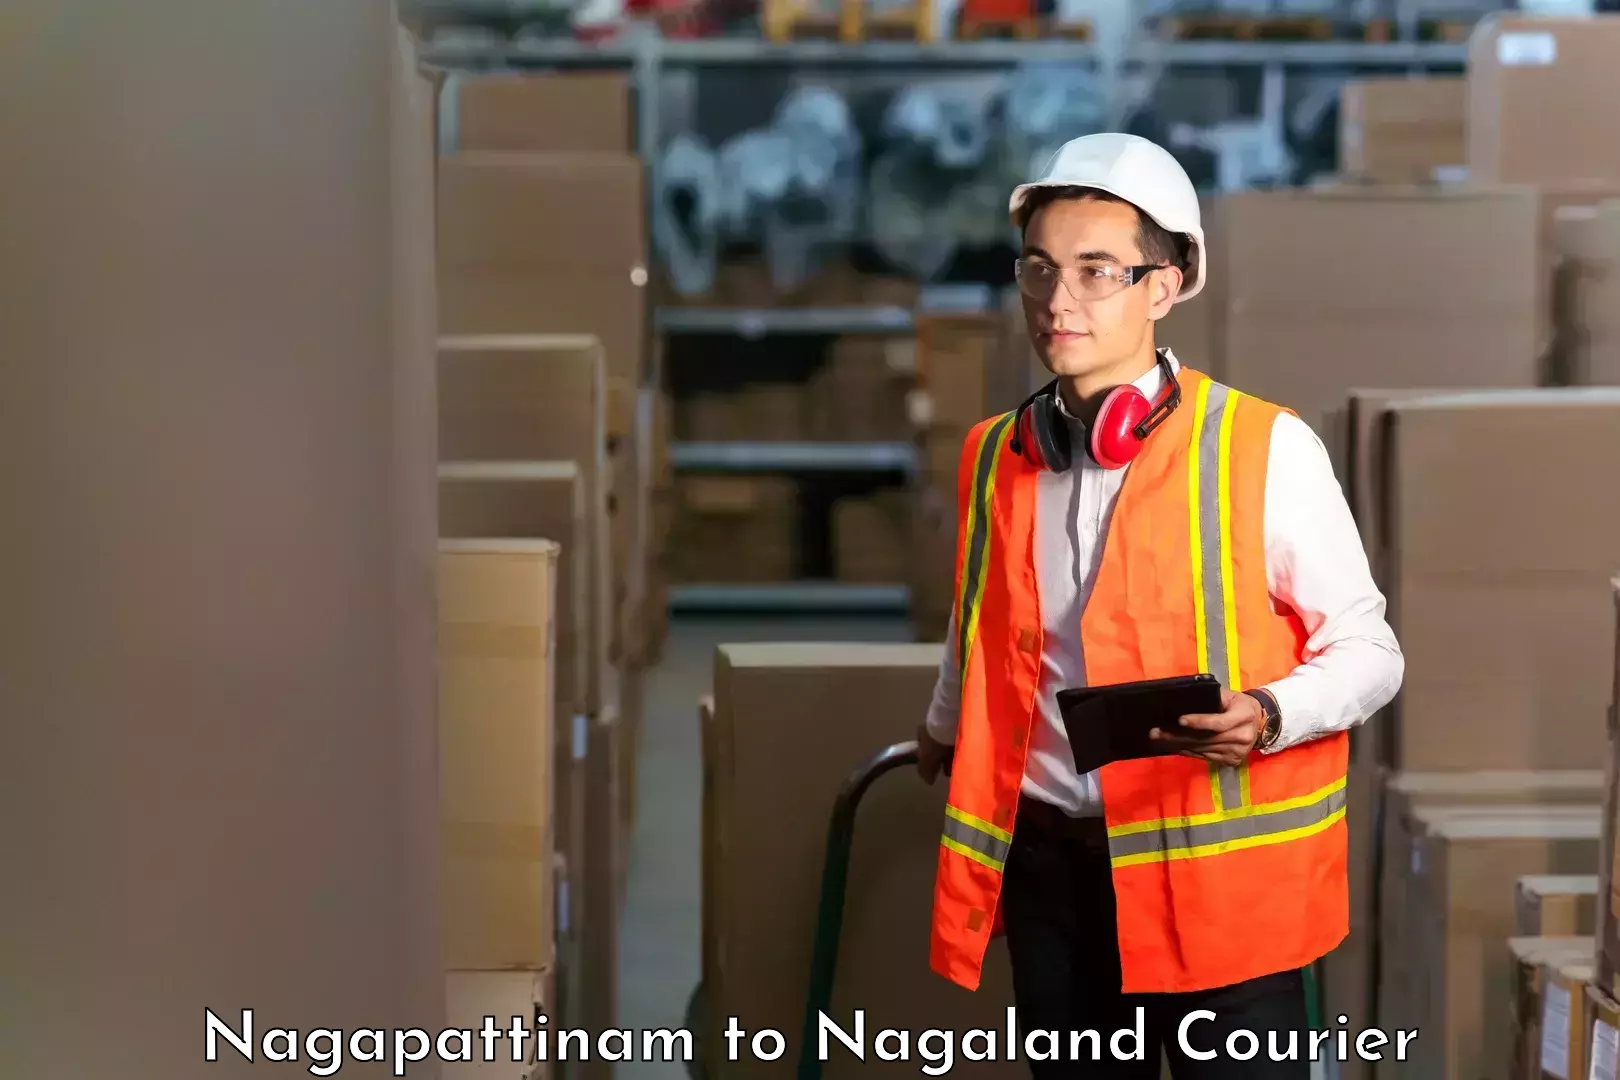 Express delivery capabilities Nagapattinam to NIT Nagaland